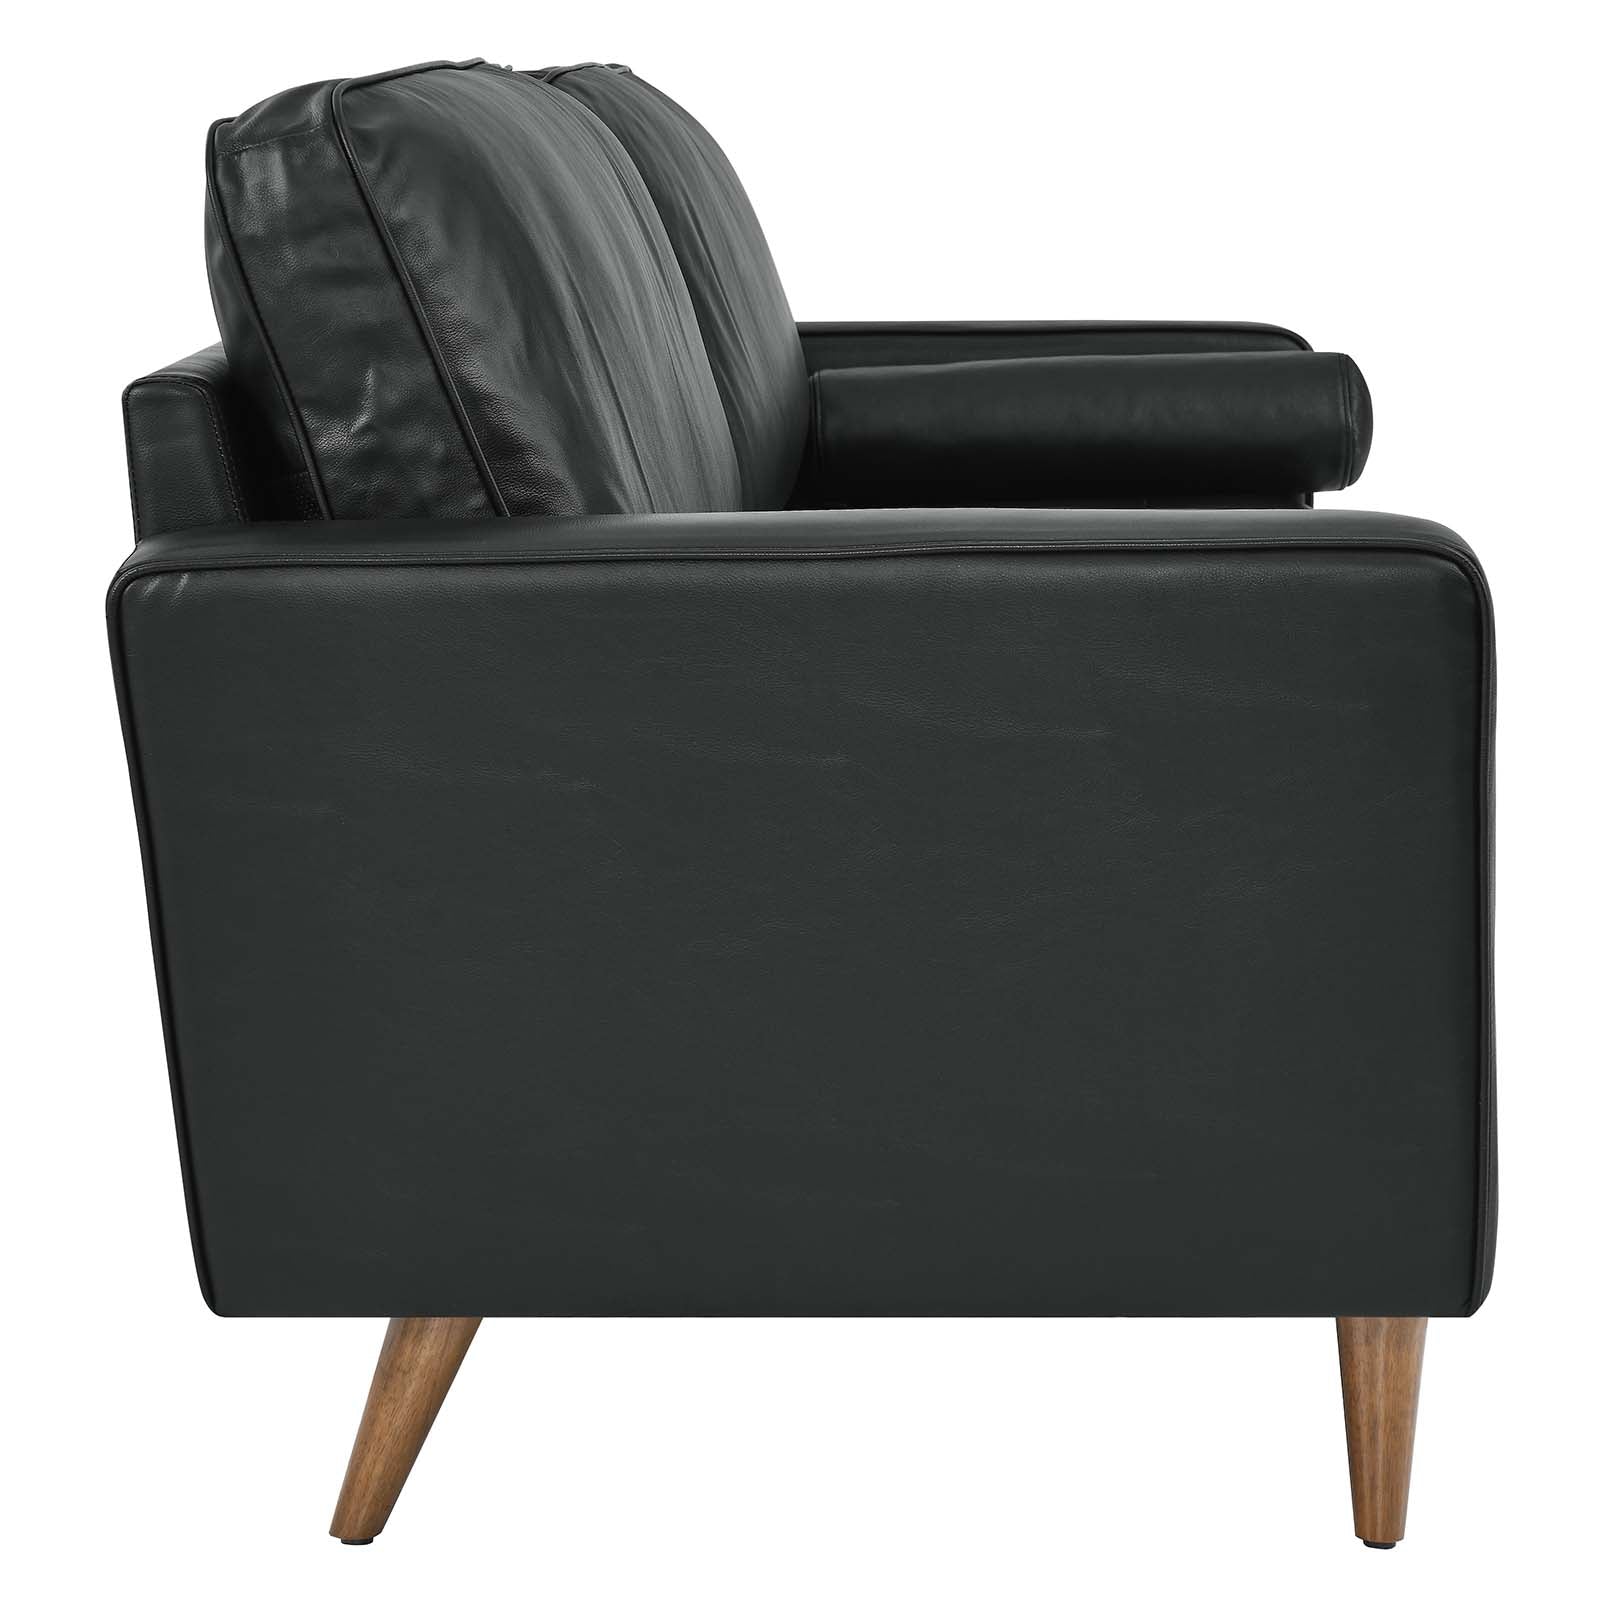 Modway Sofas & Couches - Valour 88" Leather Sofa Black